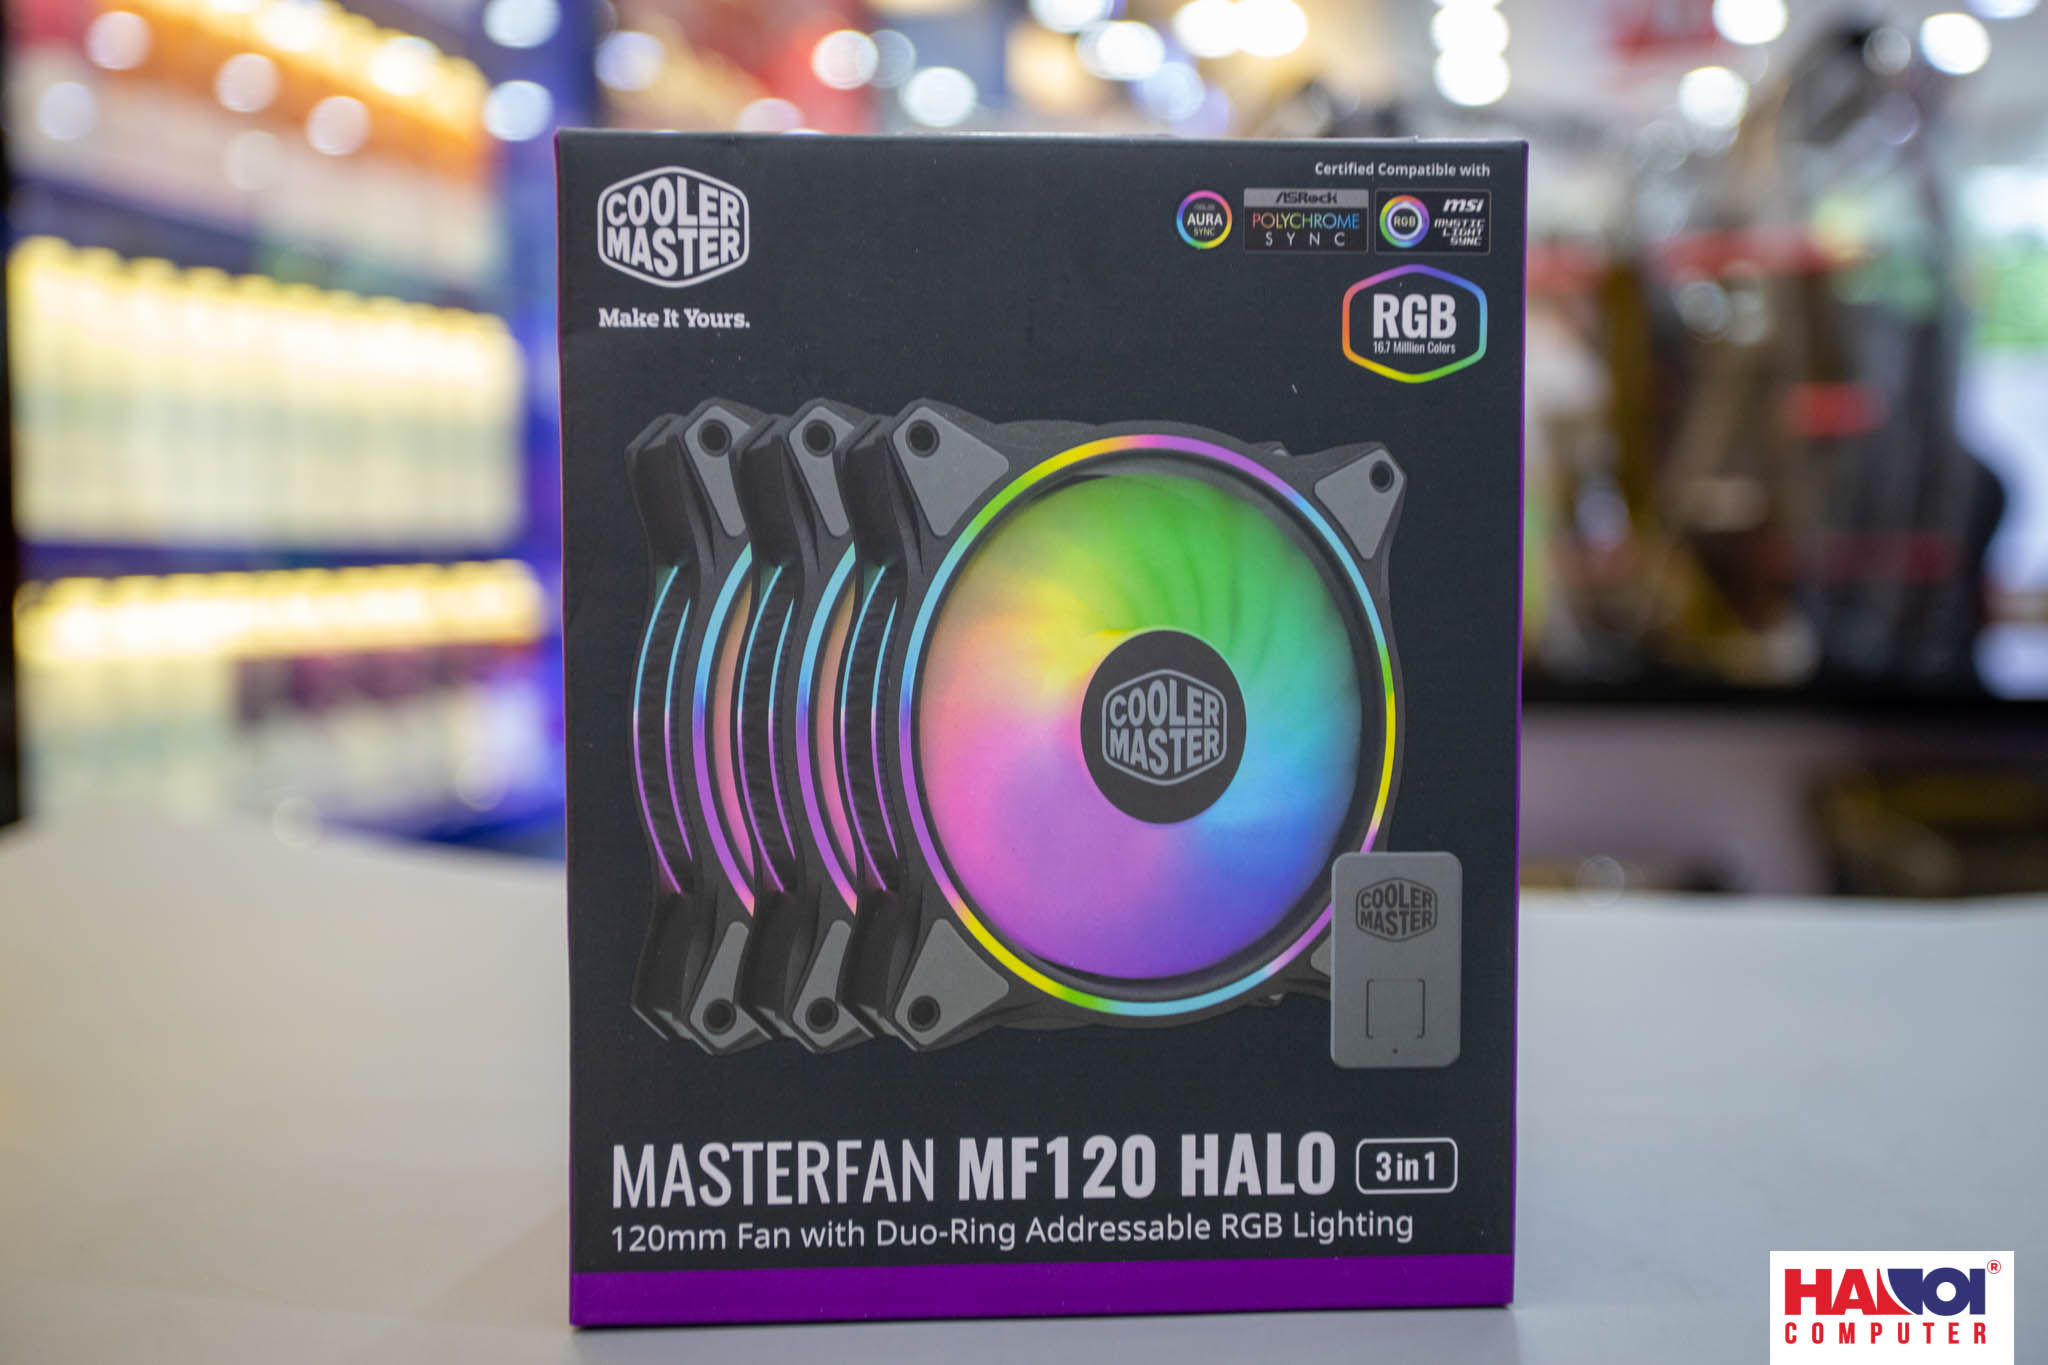 Fan Case CoolerMaster MasterFan MF120 Halo 3in1